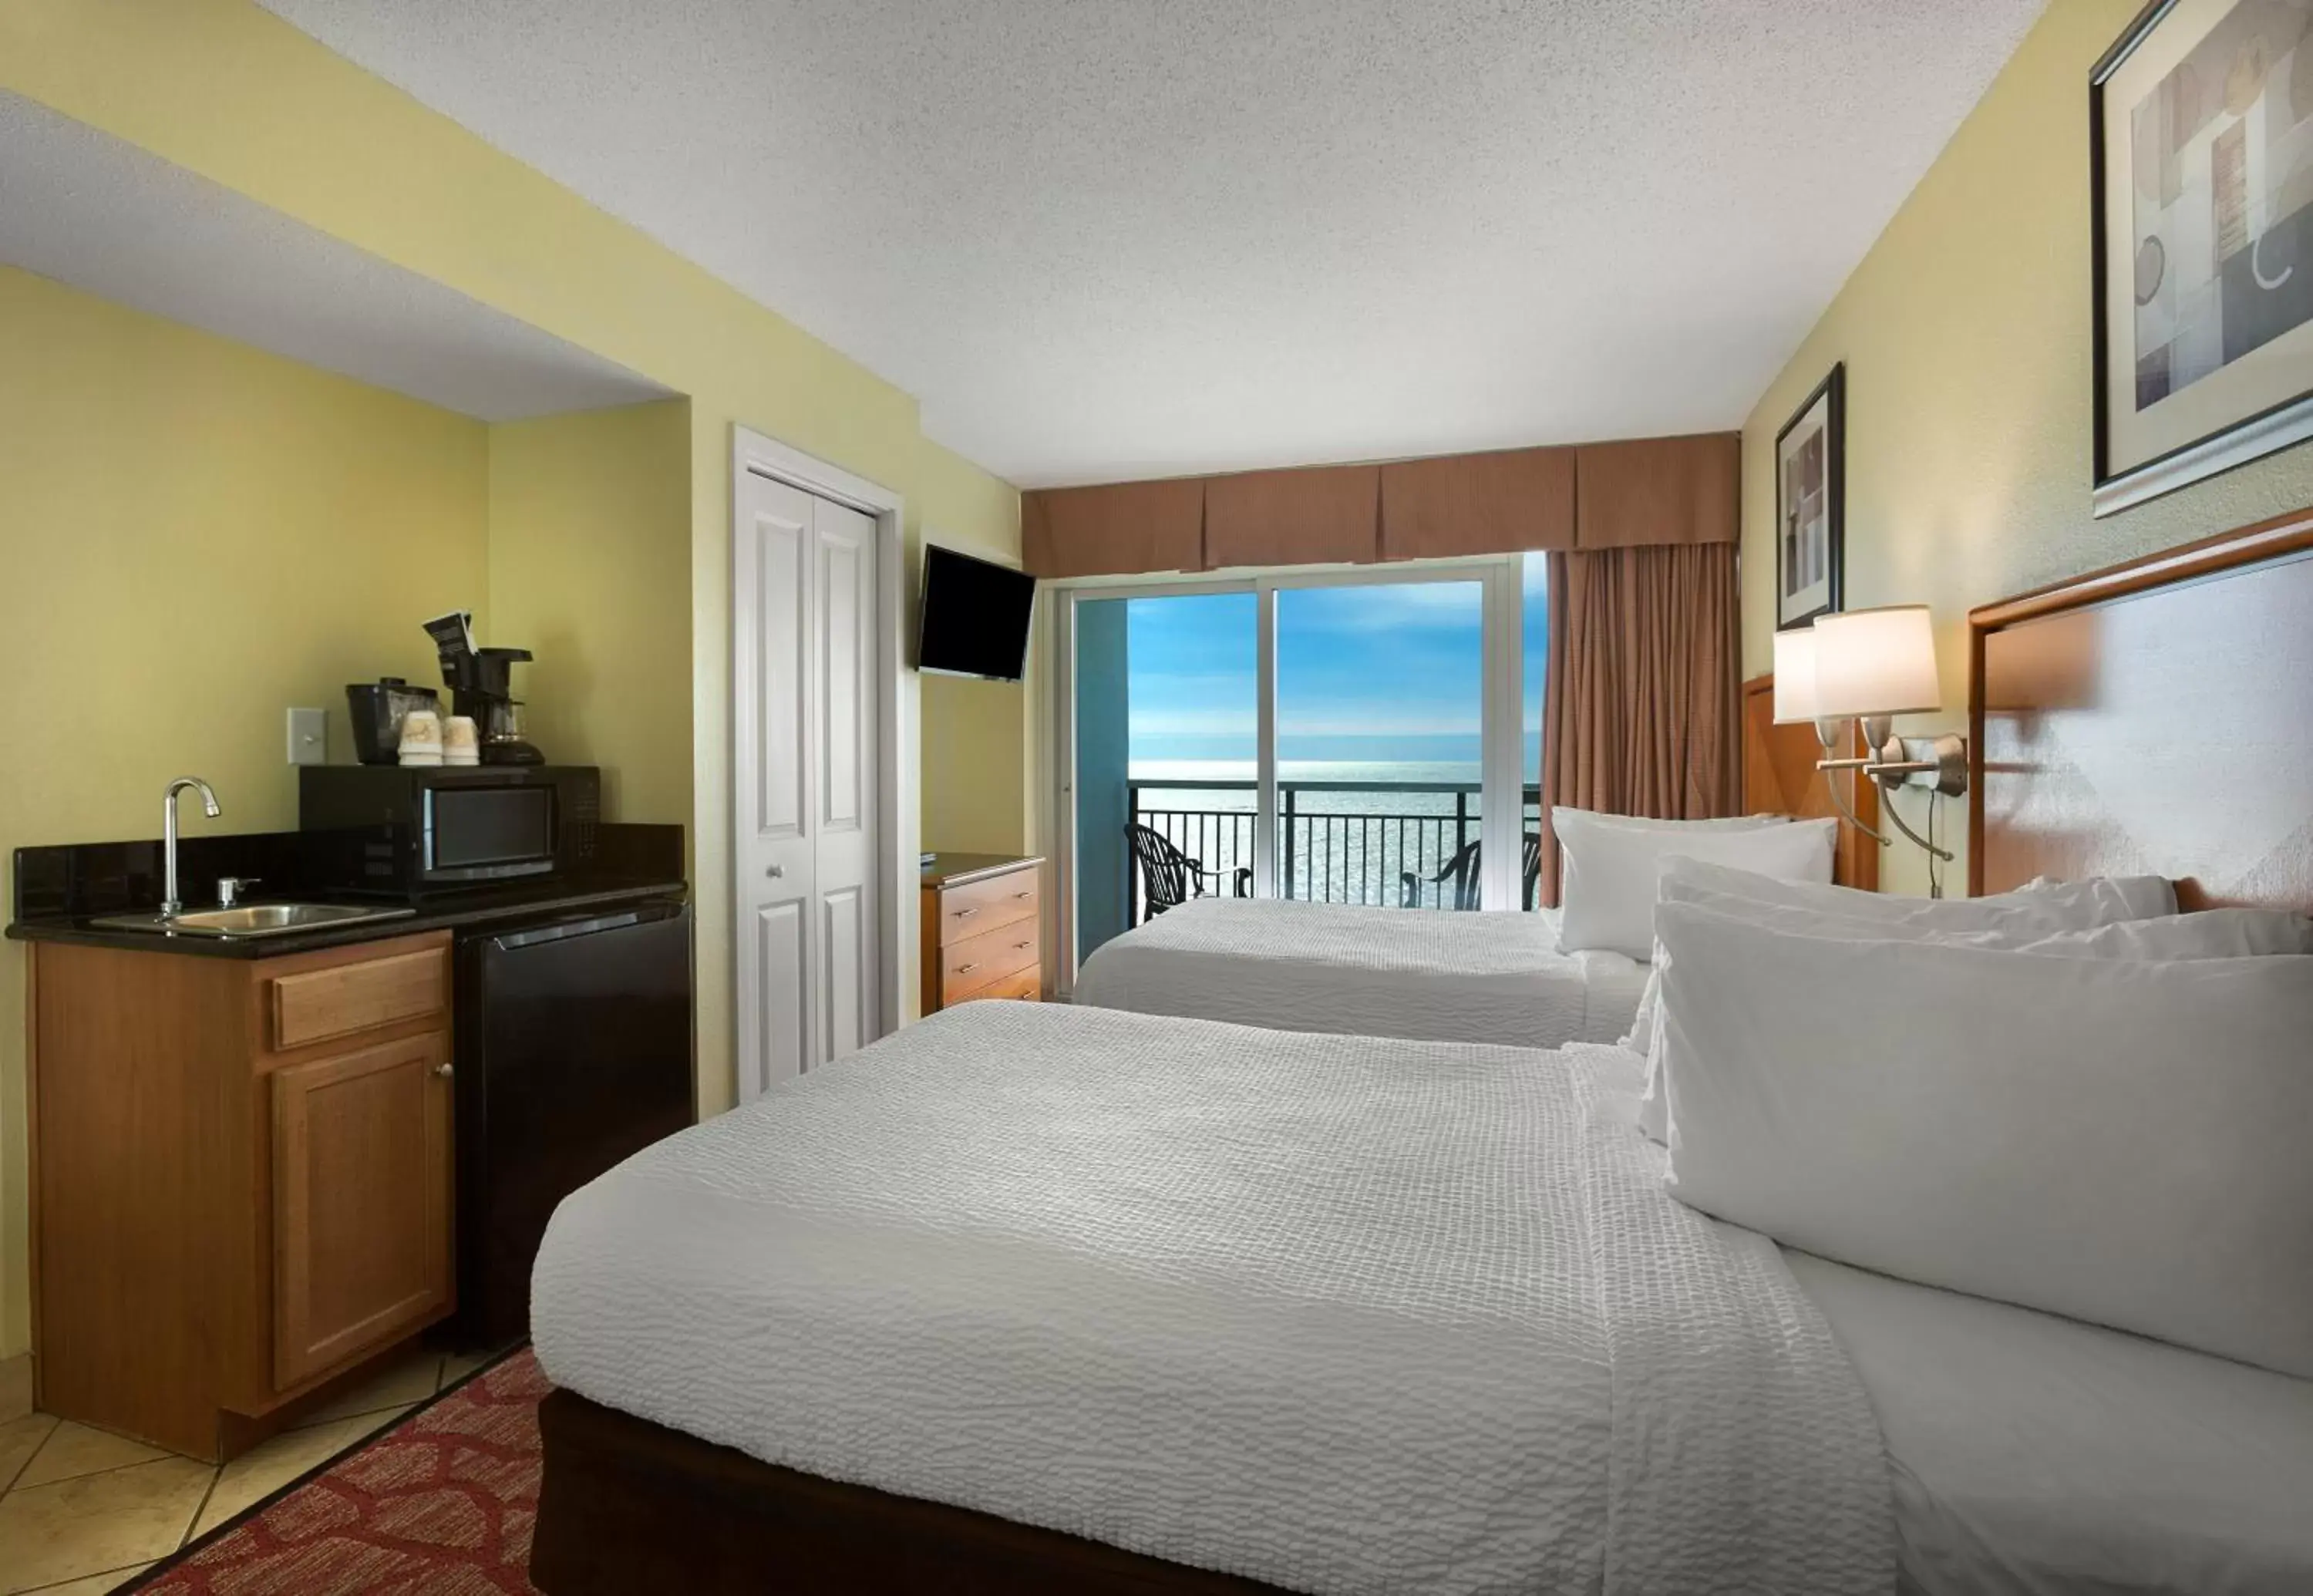 Bedroom in Bay View Resort Myrtle Beach